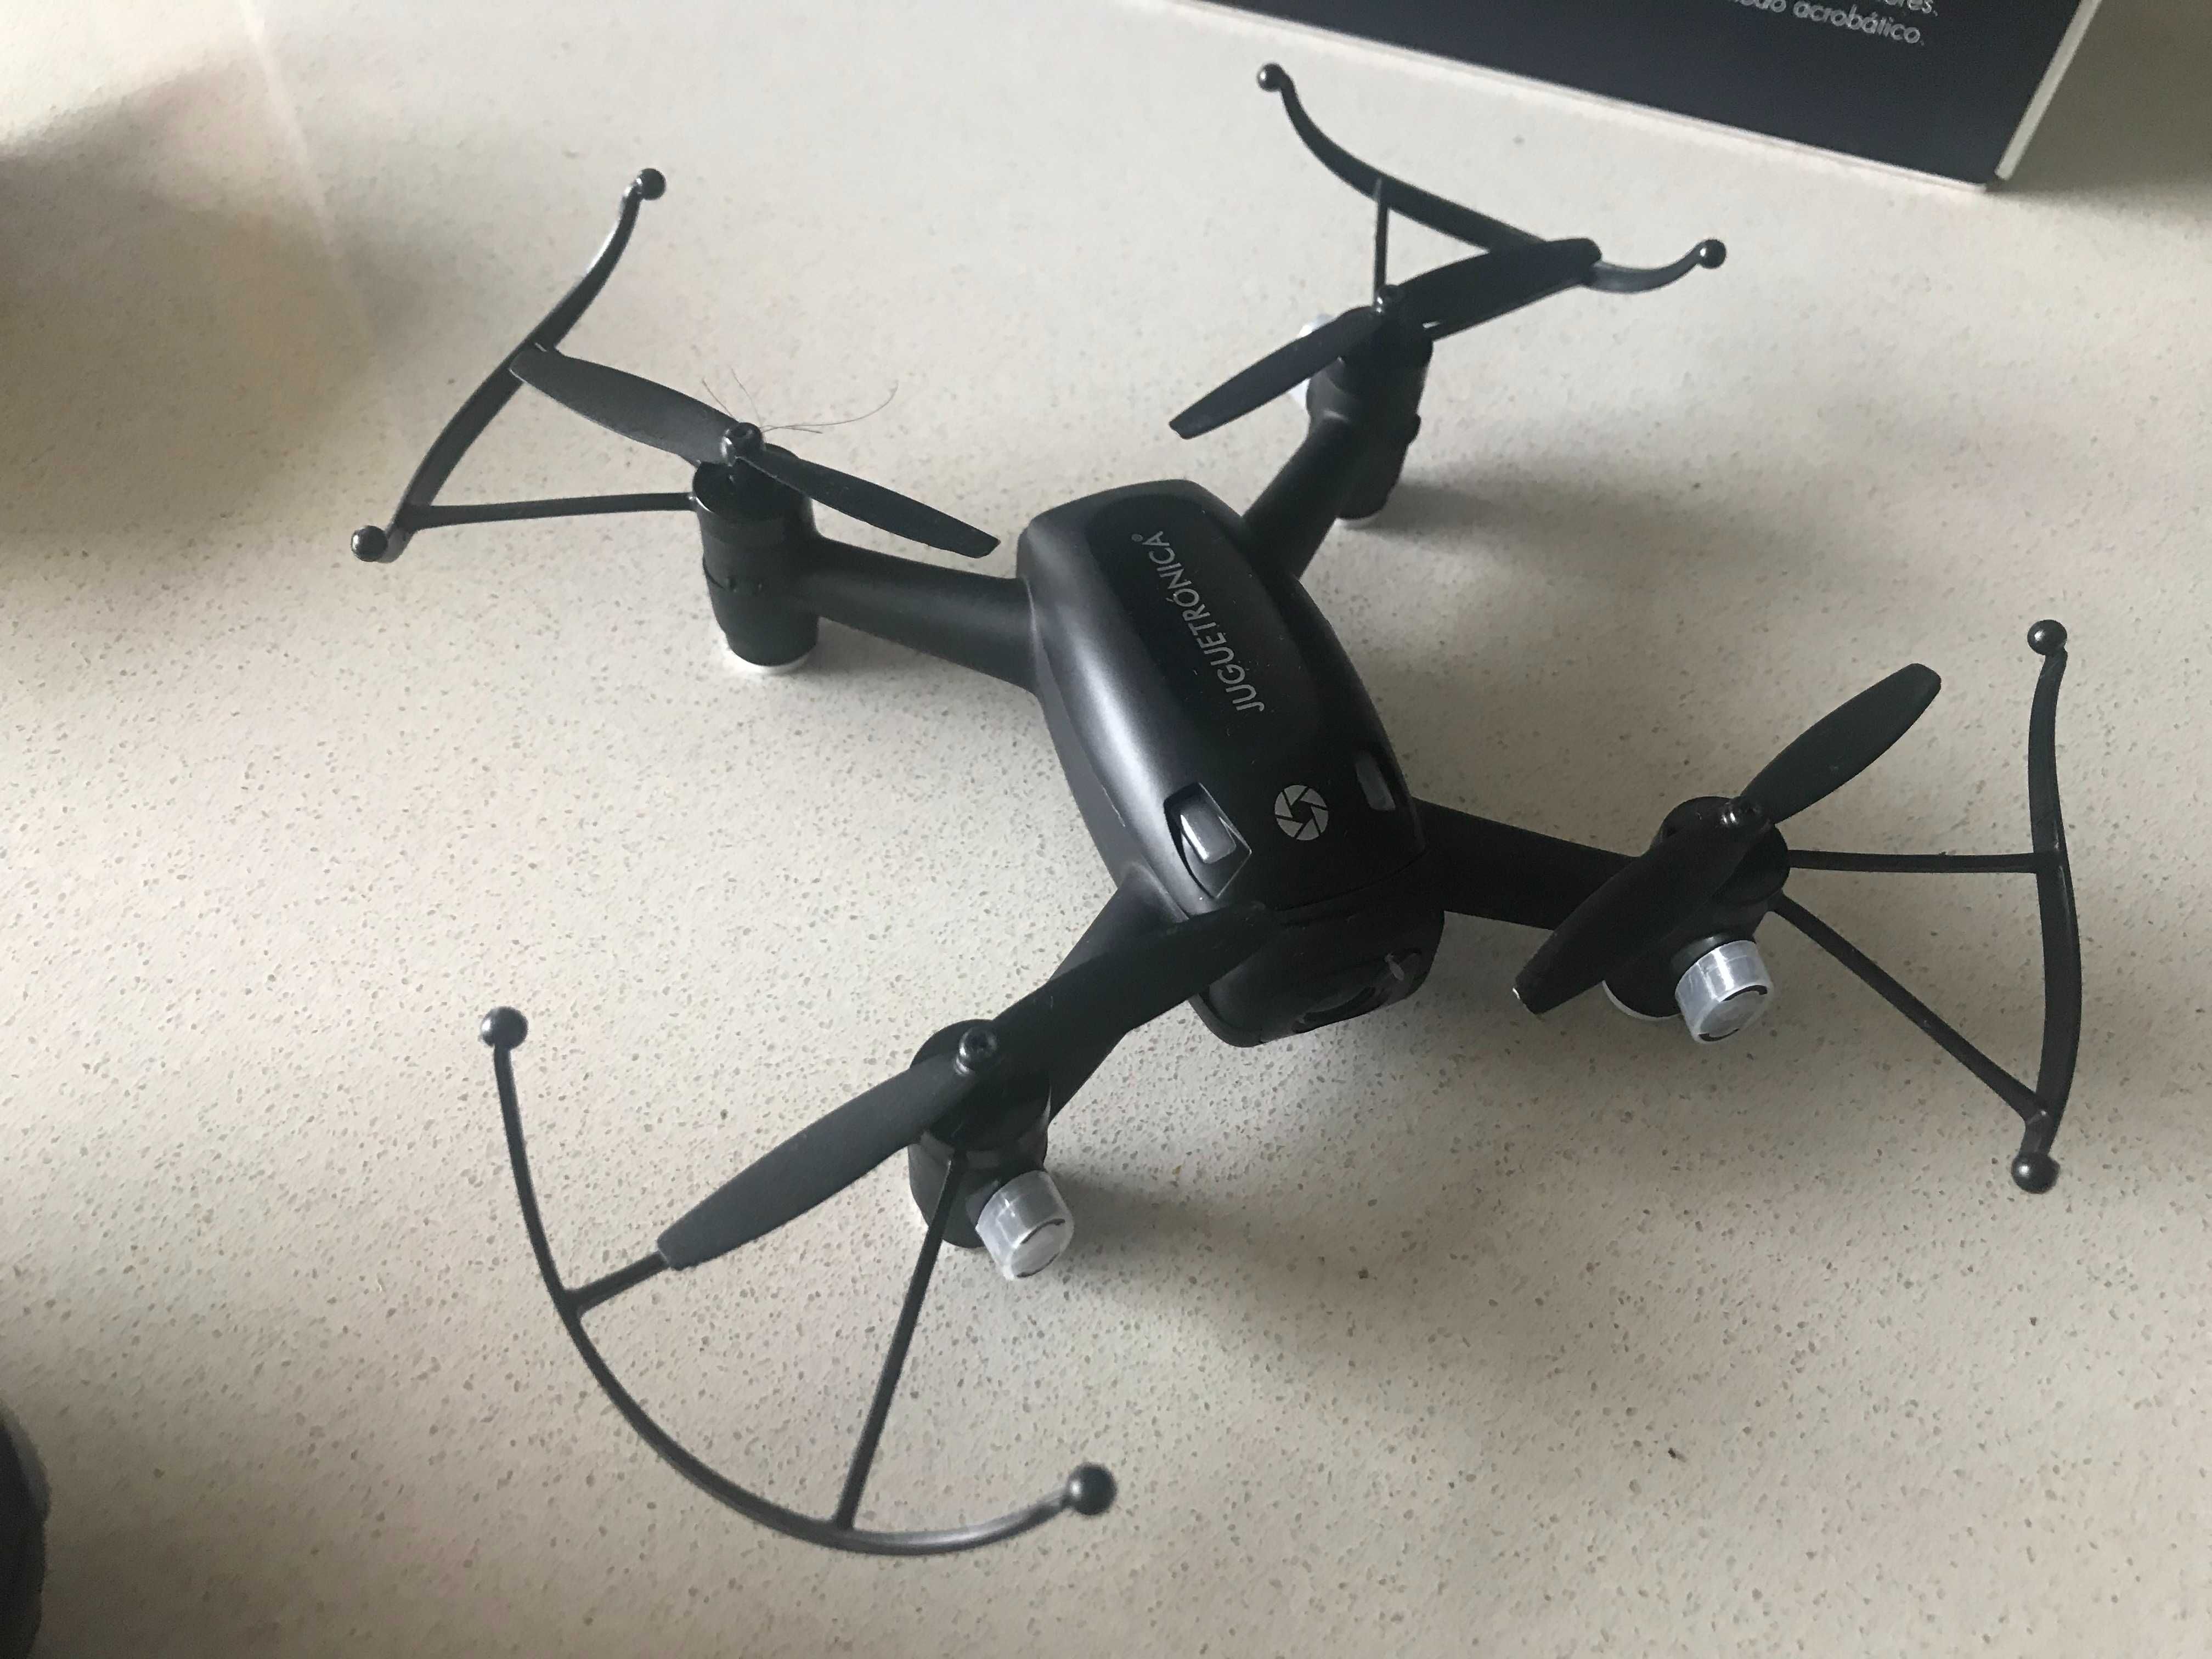 Drone - NanoDrone